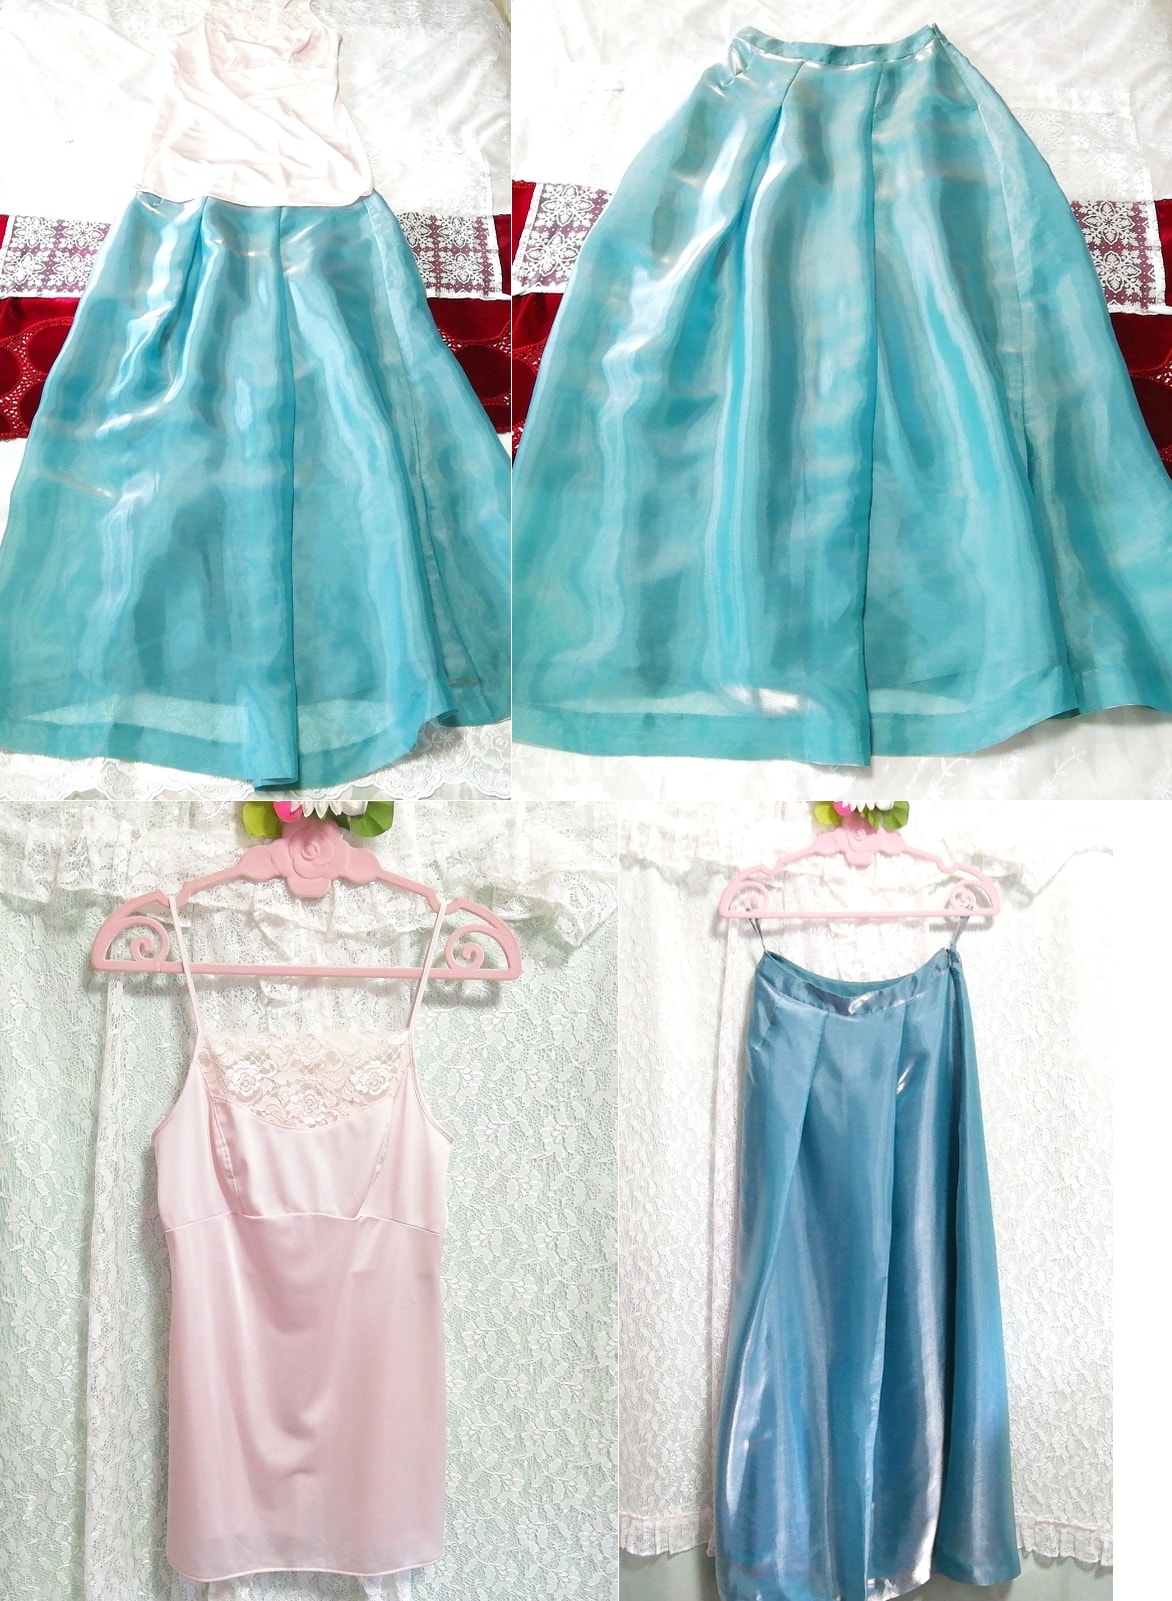 粉色吊带背心睡衣缎面超长半身裙 2 件, 时尚, 女士时装, 睡衣